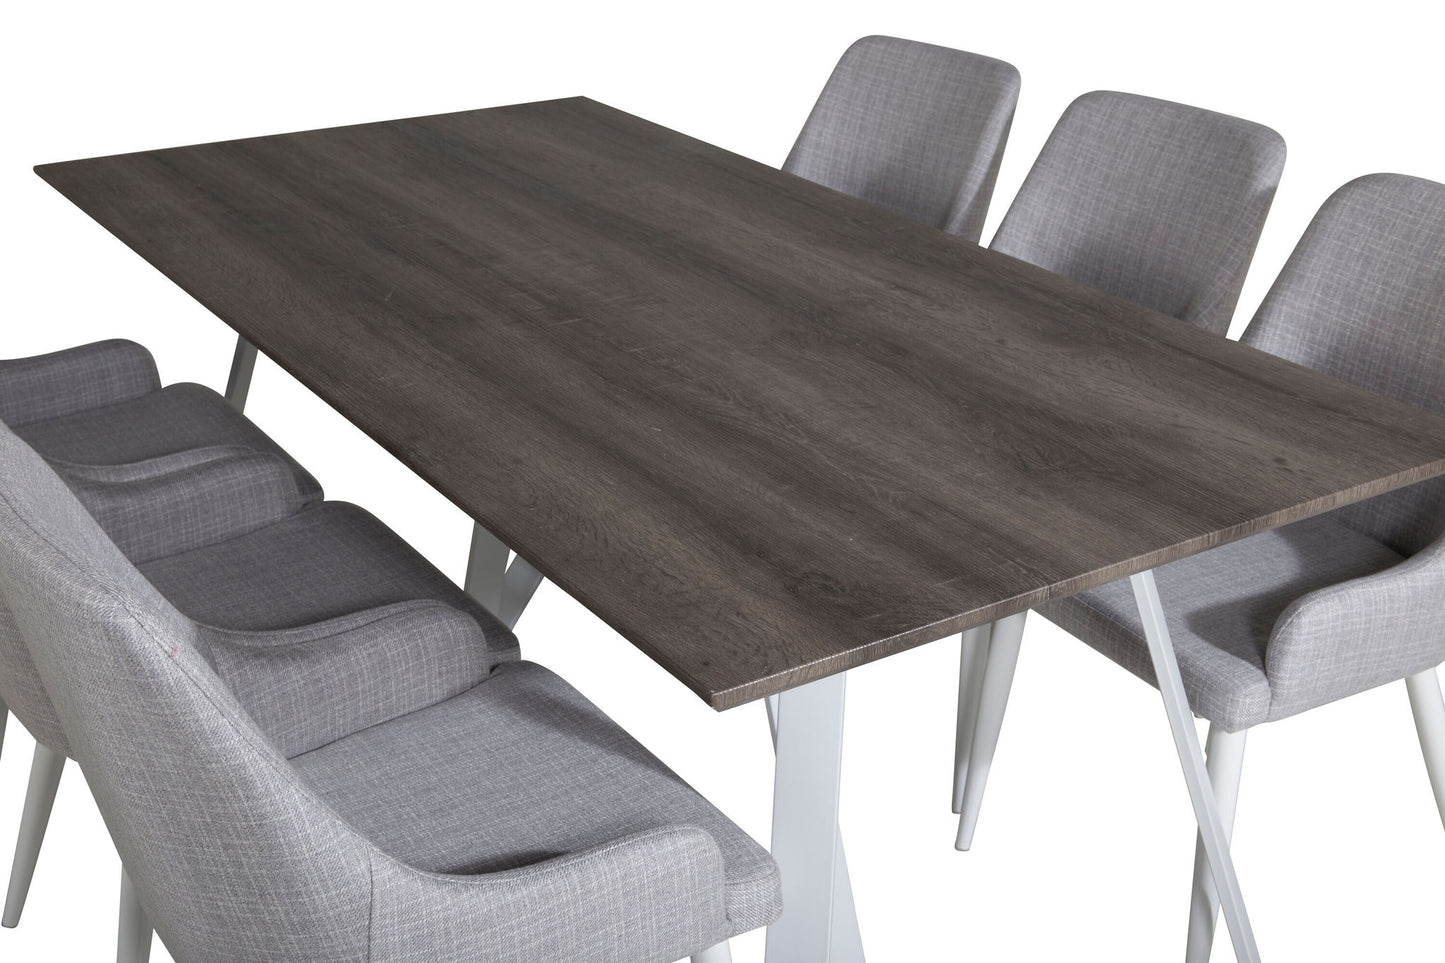 Maria - Spisebord, Grå "oak" / Hvide ben + Plaza stol - Hvide ben - Lysegråt stof